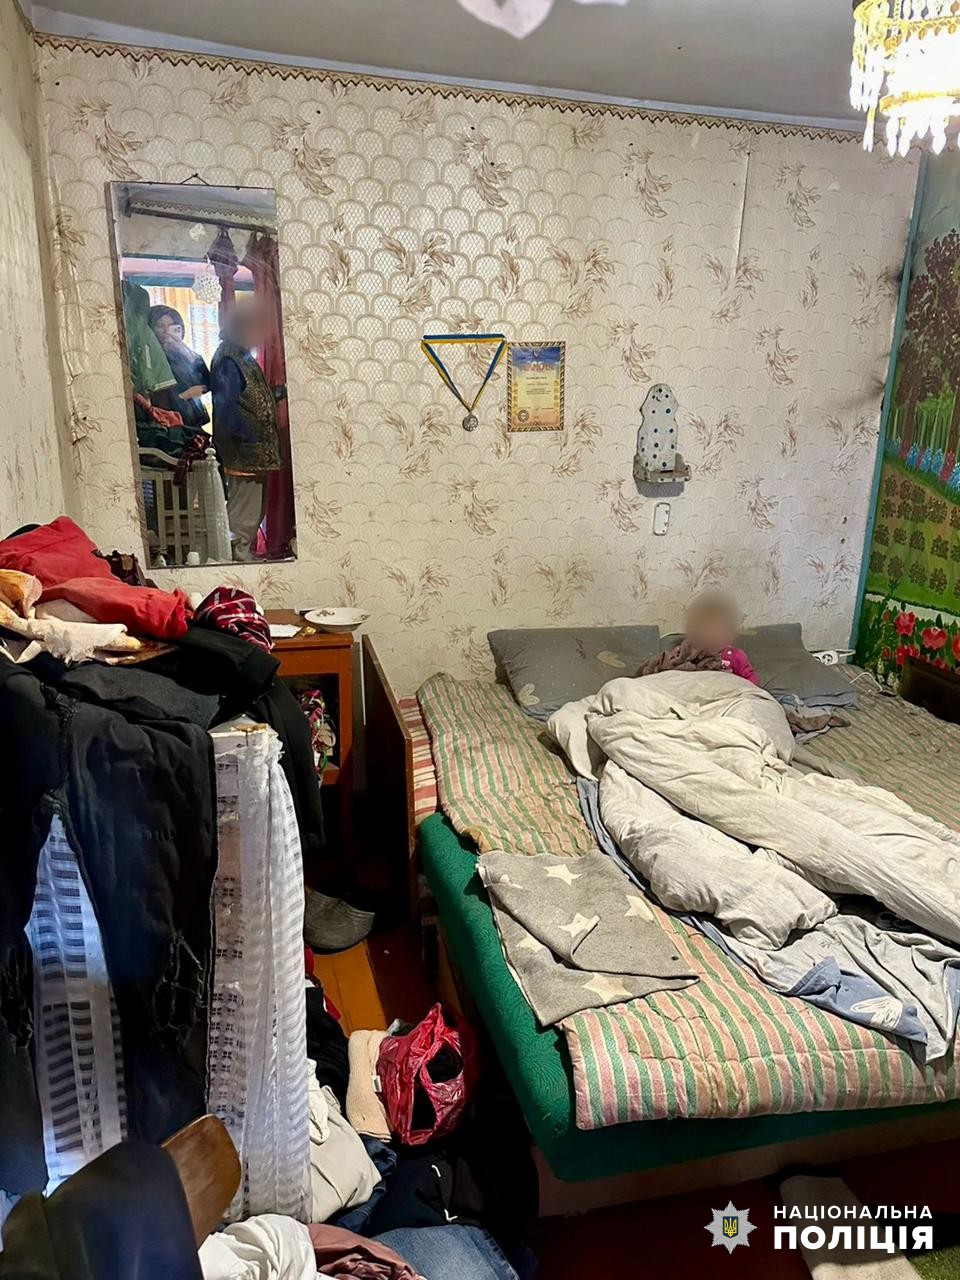 Антисанітарія, голод та злочинне порушення батьківських обов'язків: в Болградському районі перевірили неблагополучні родини